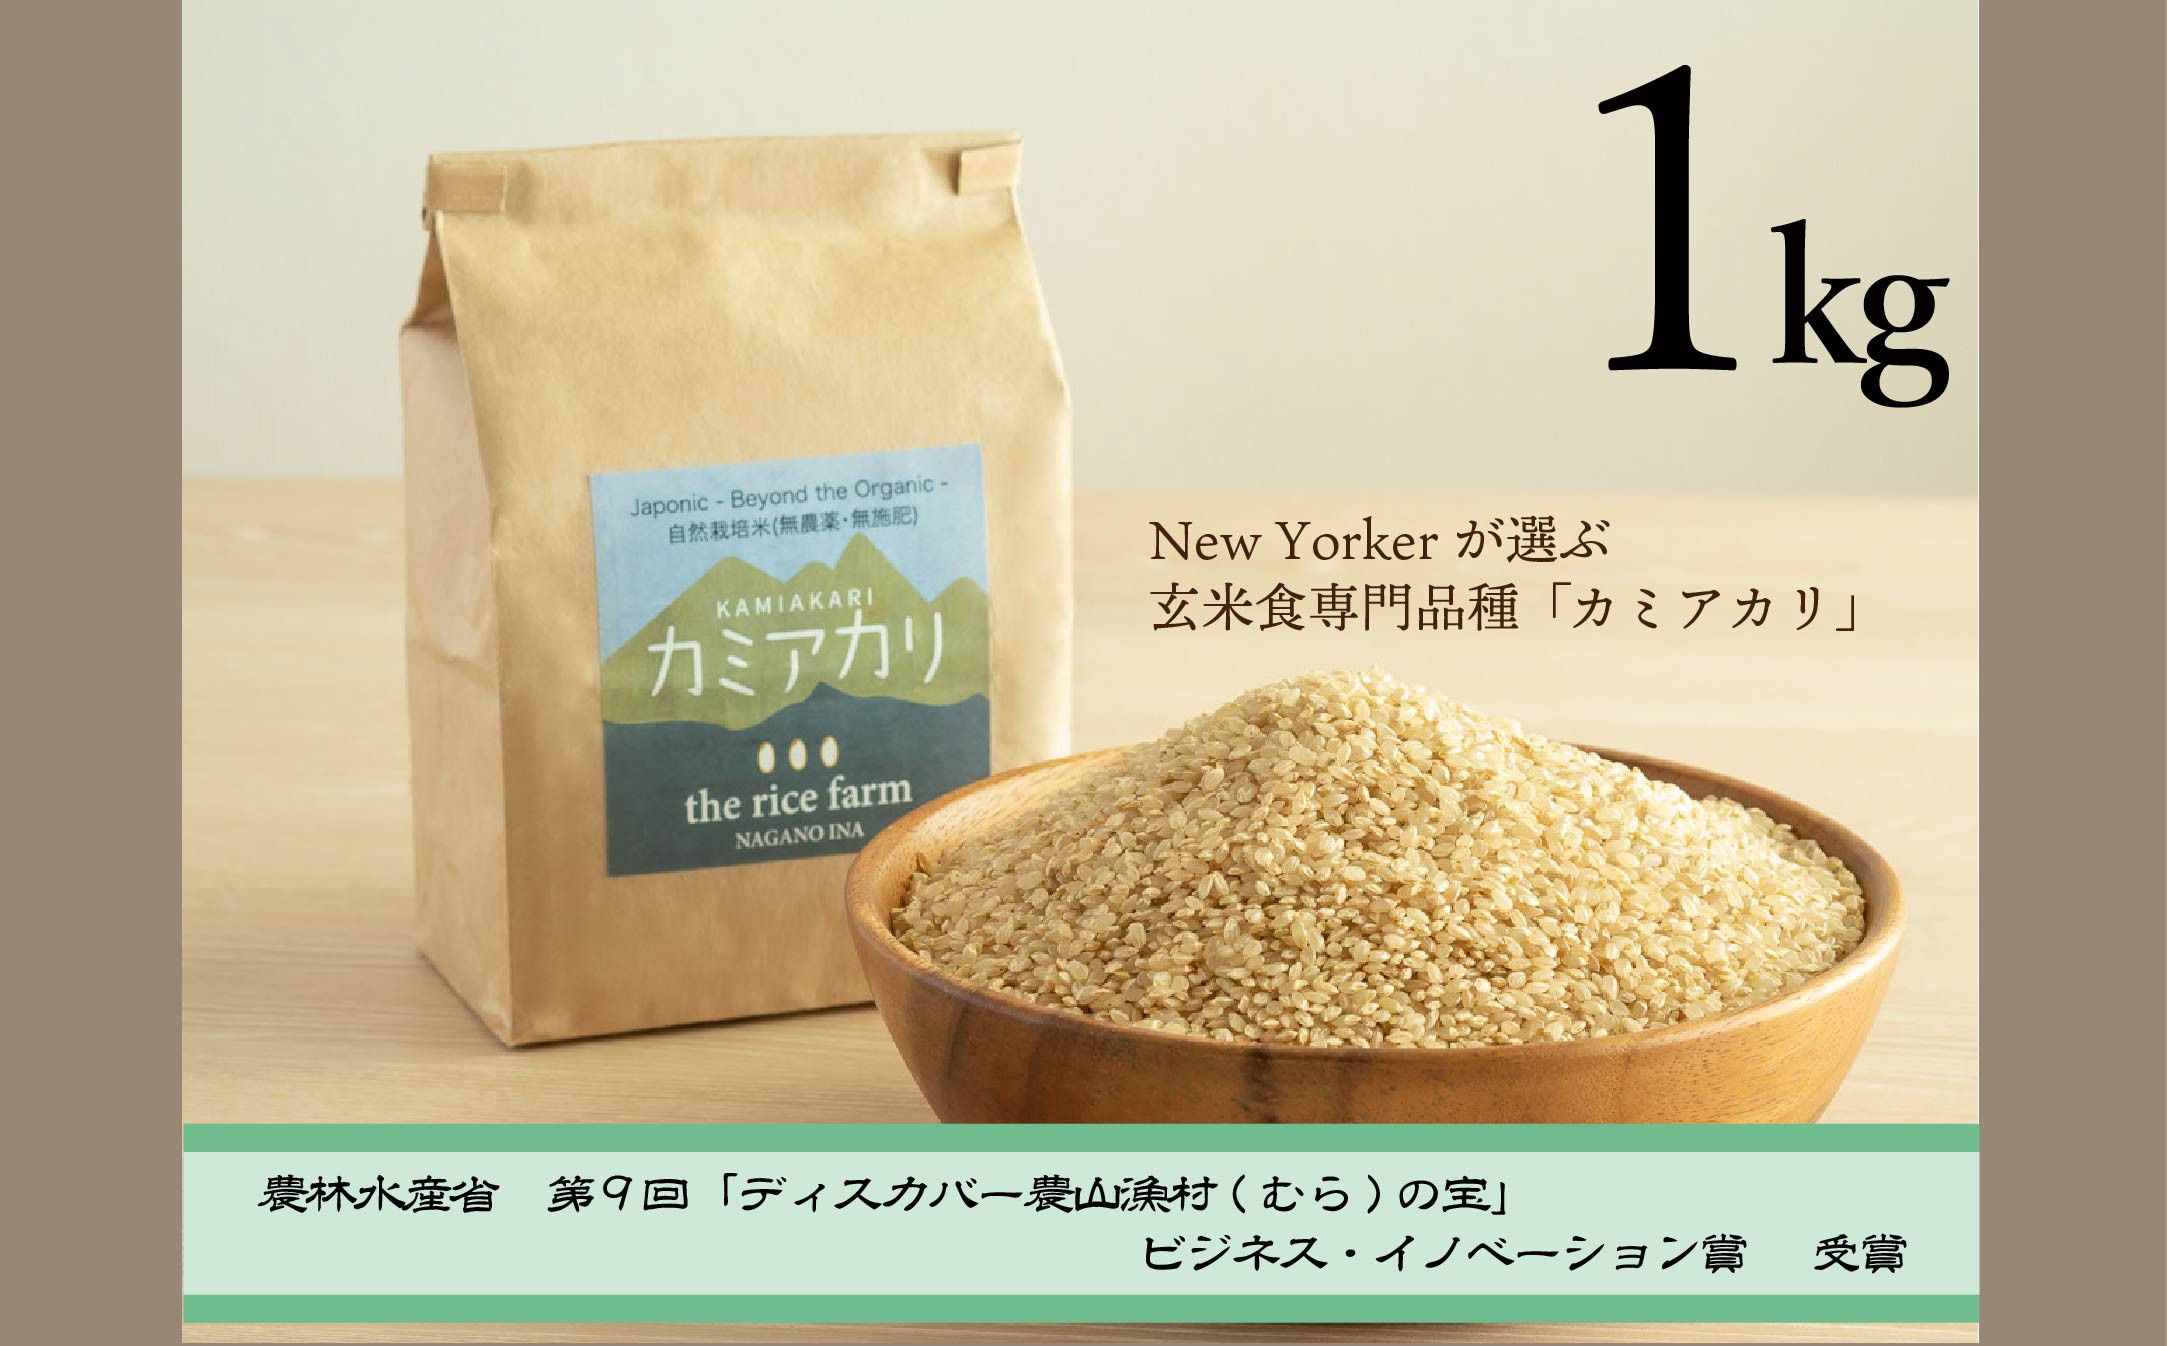 
【009-08】【幻の玄米】　自然栽培　カミアカリ　玄米　1ｋｇ
